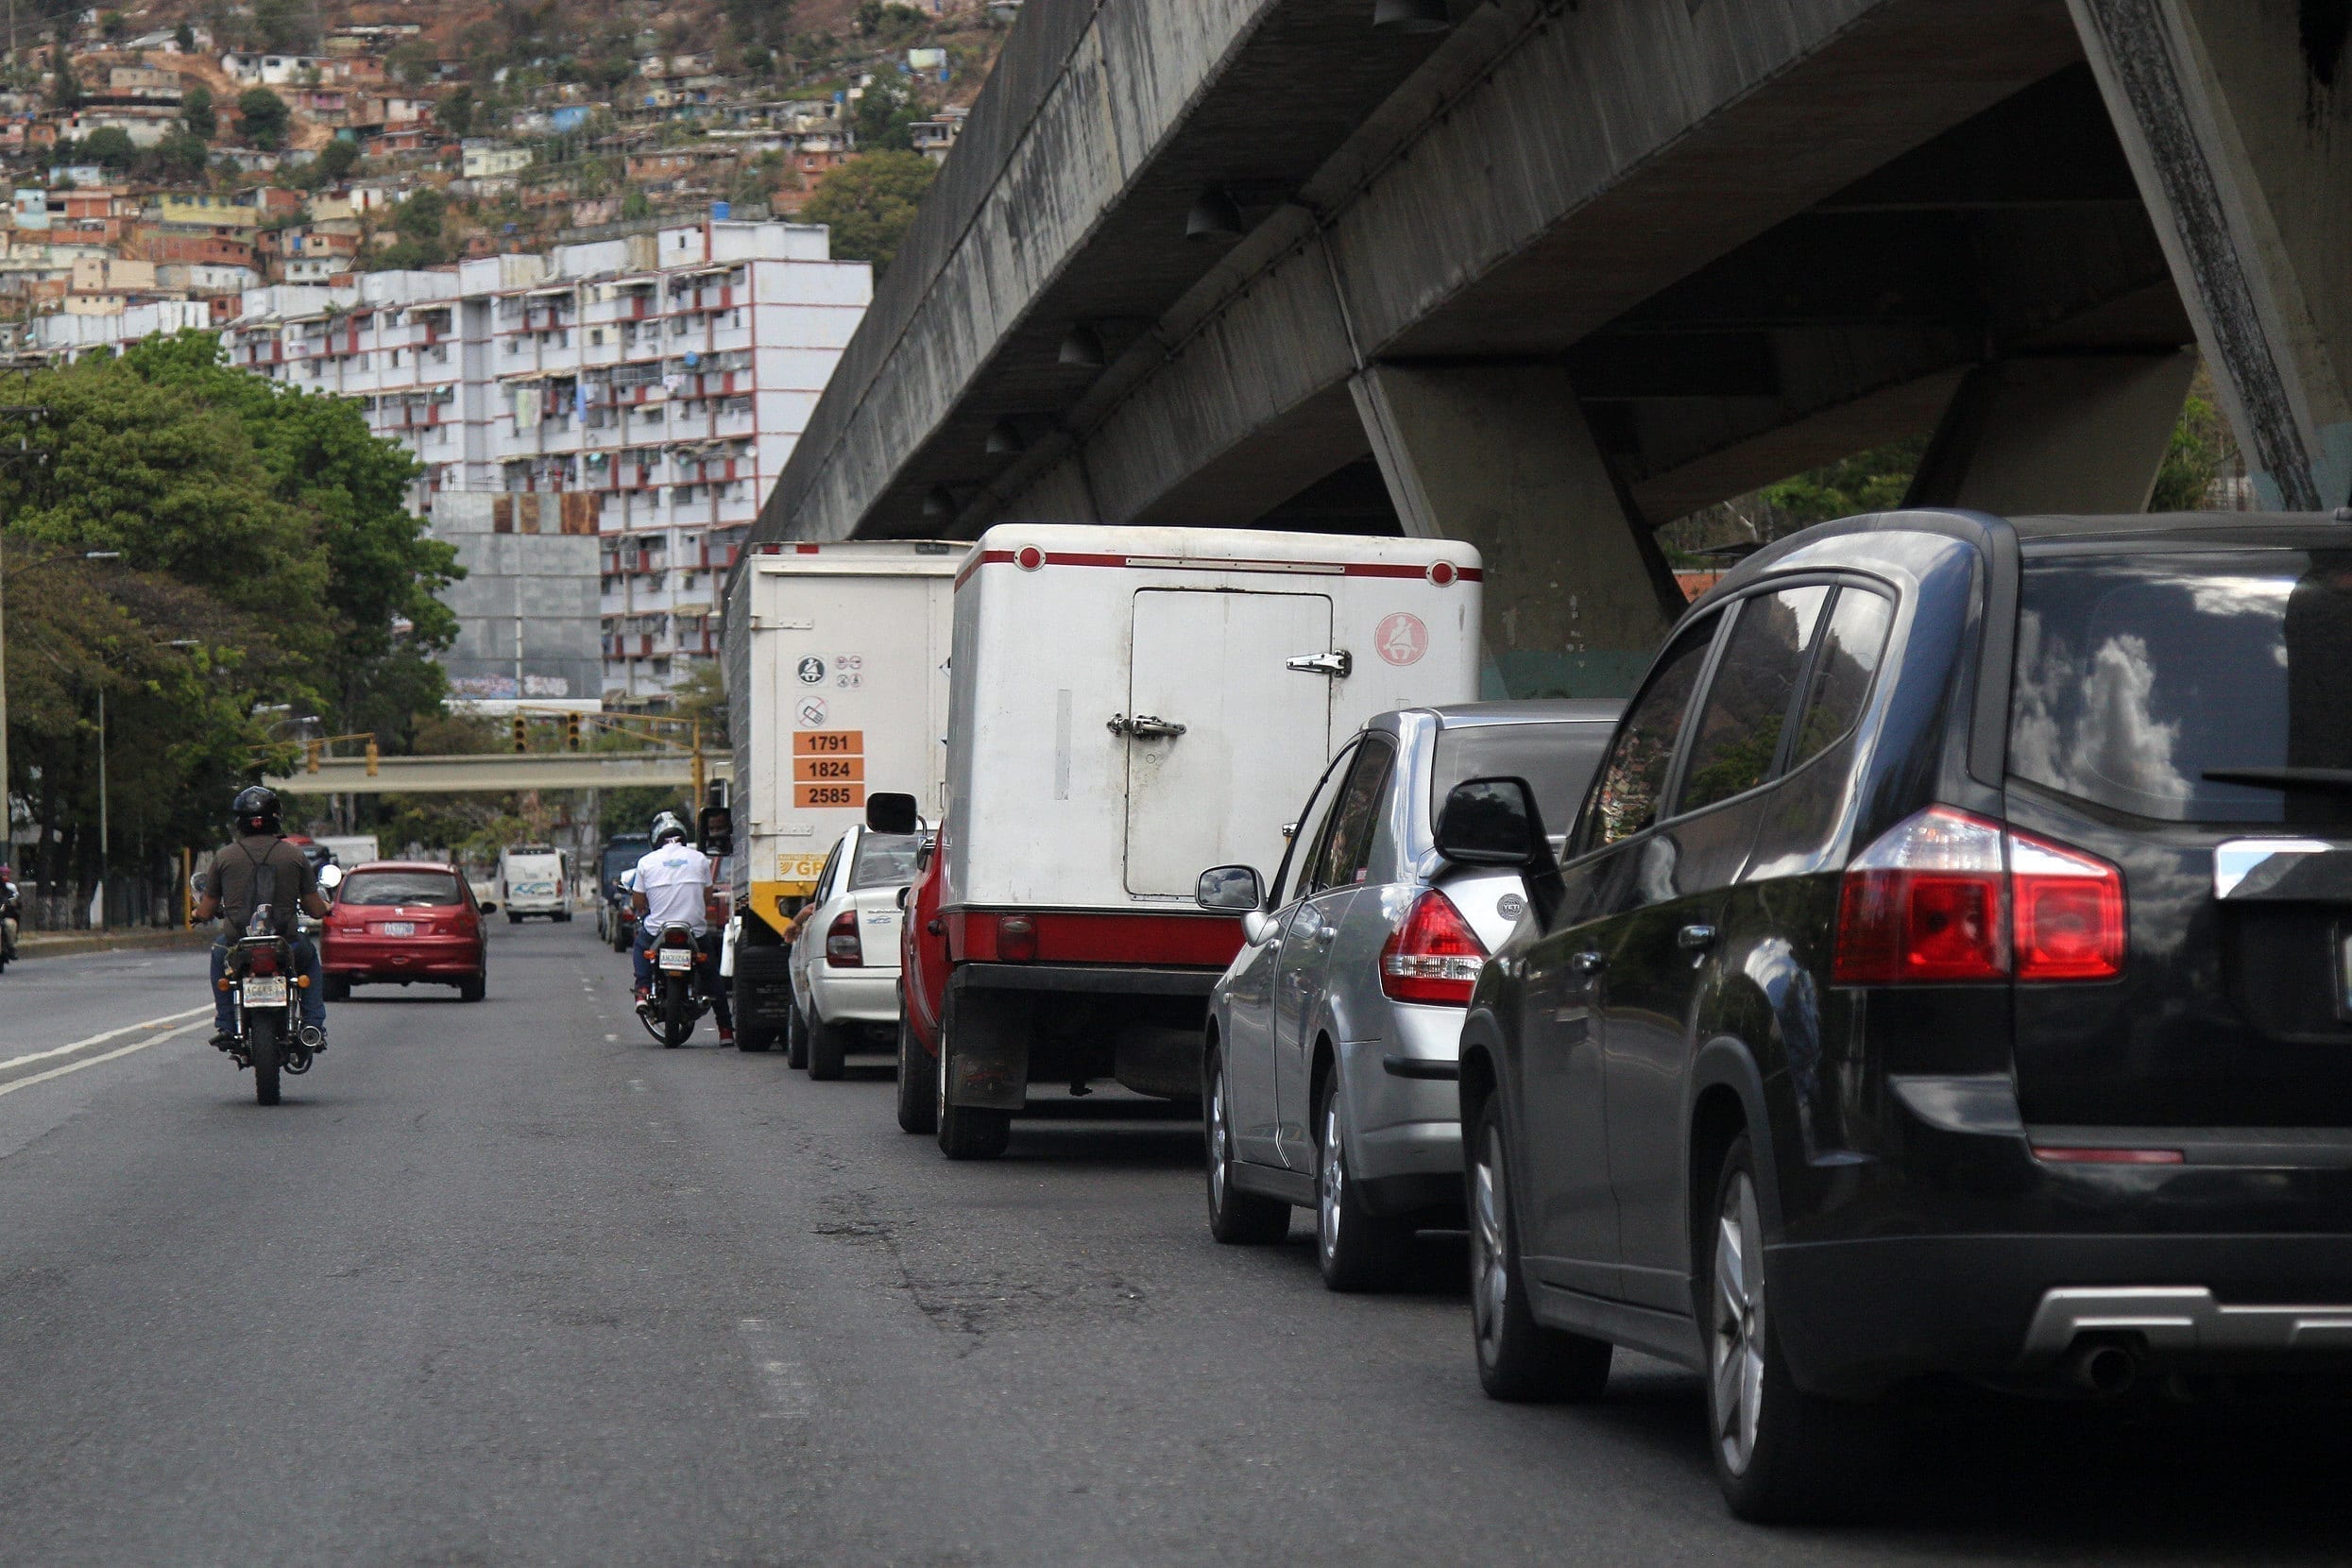 Equipo de prensa de Caraota Digital fue amedrentado por colectivos en Caracas